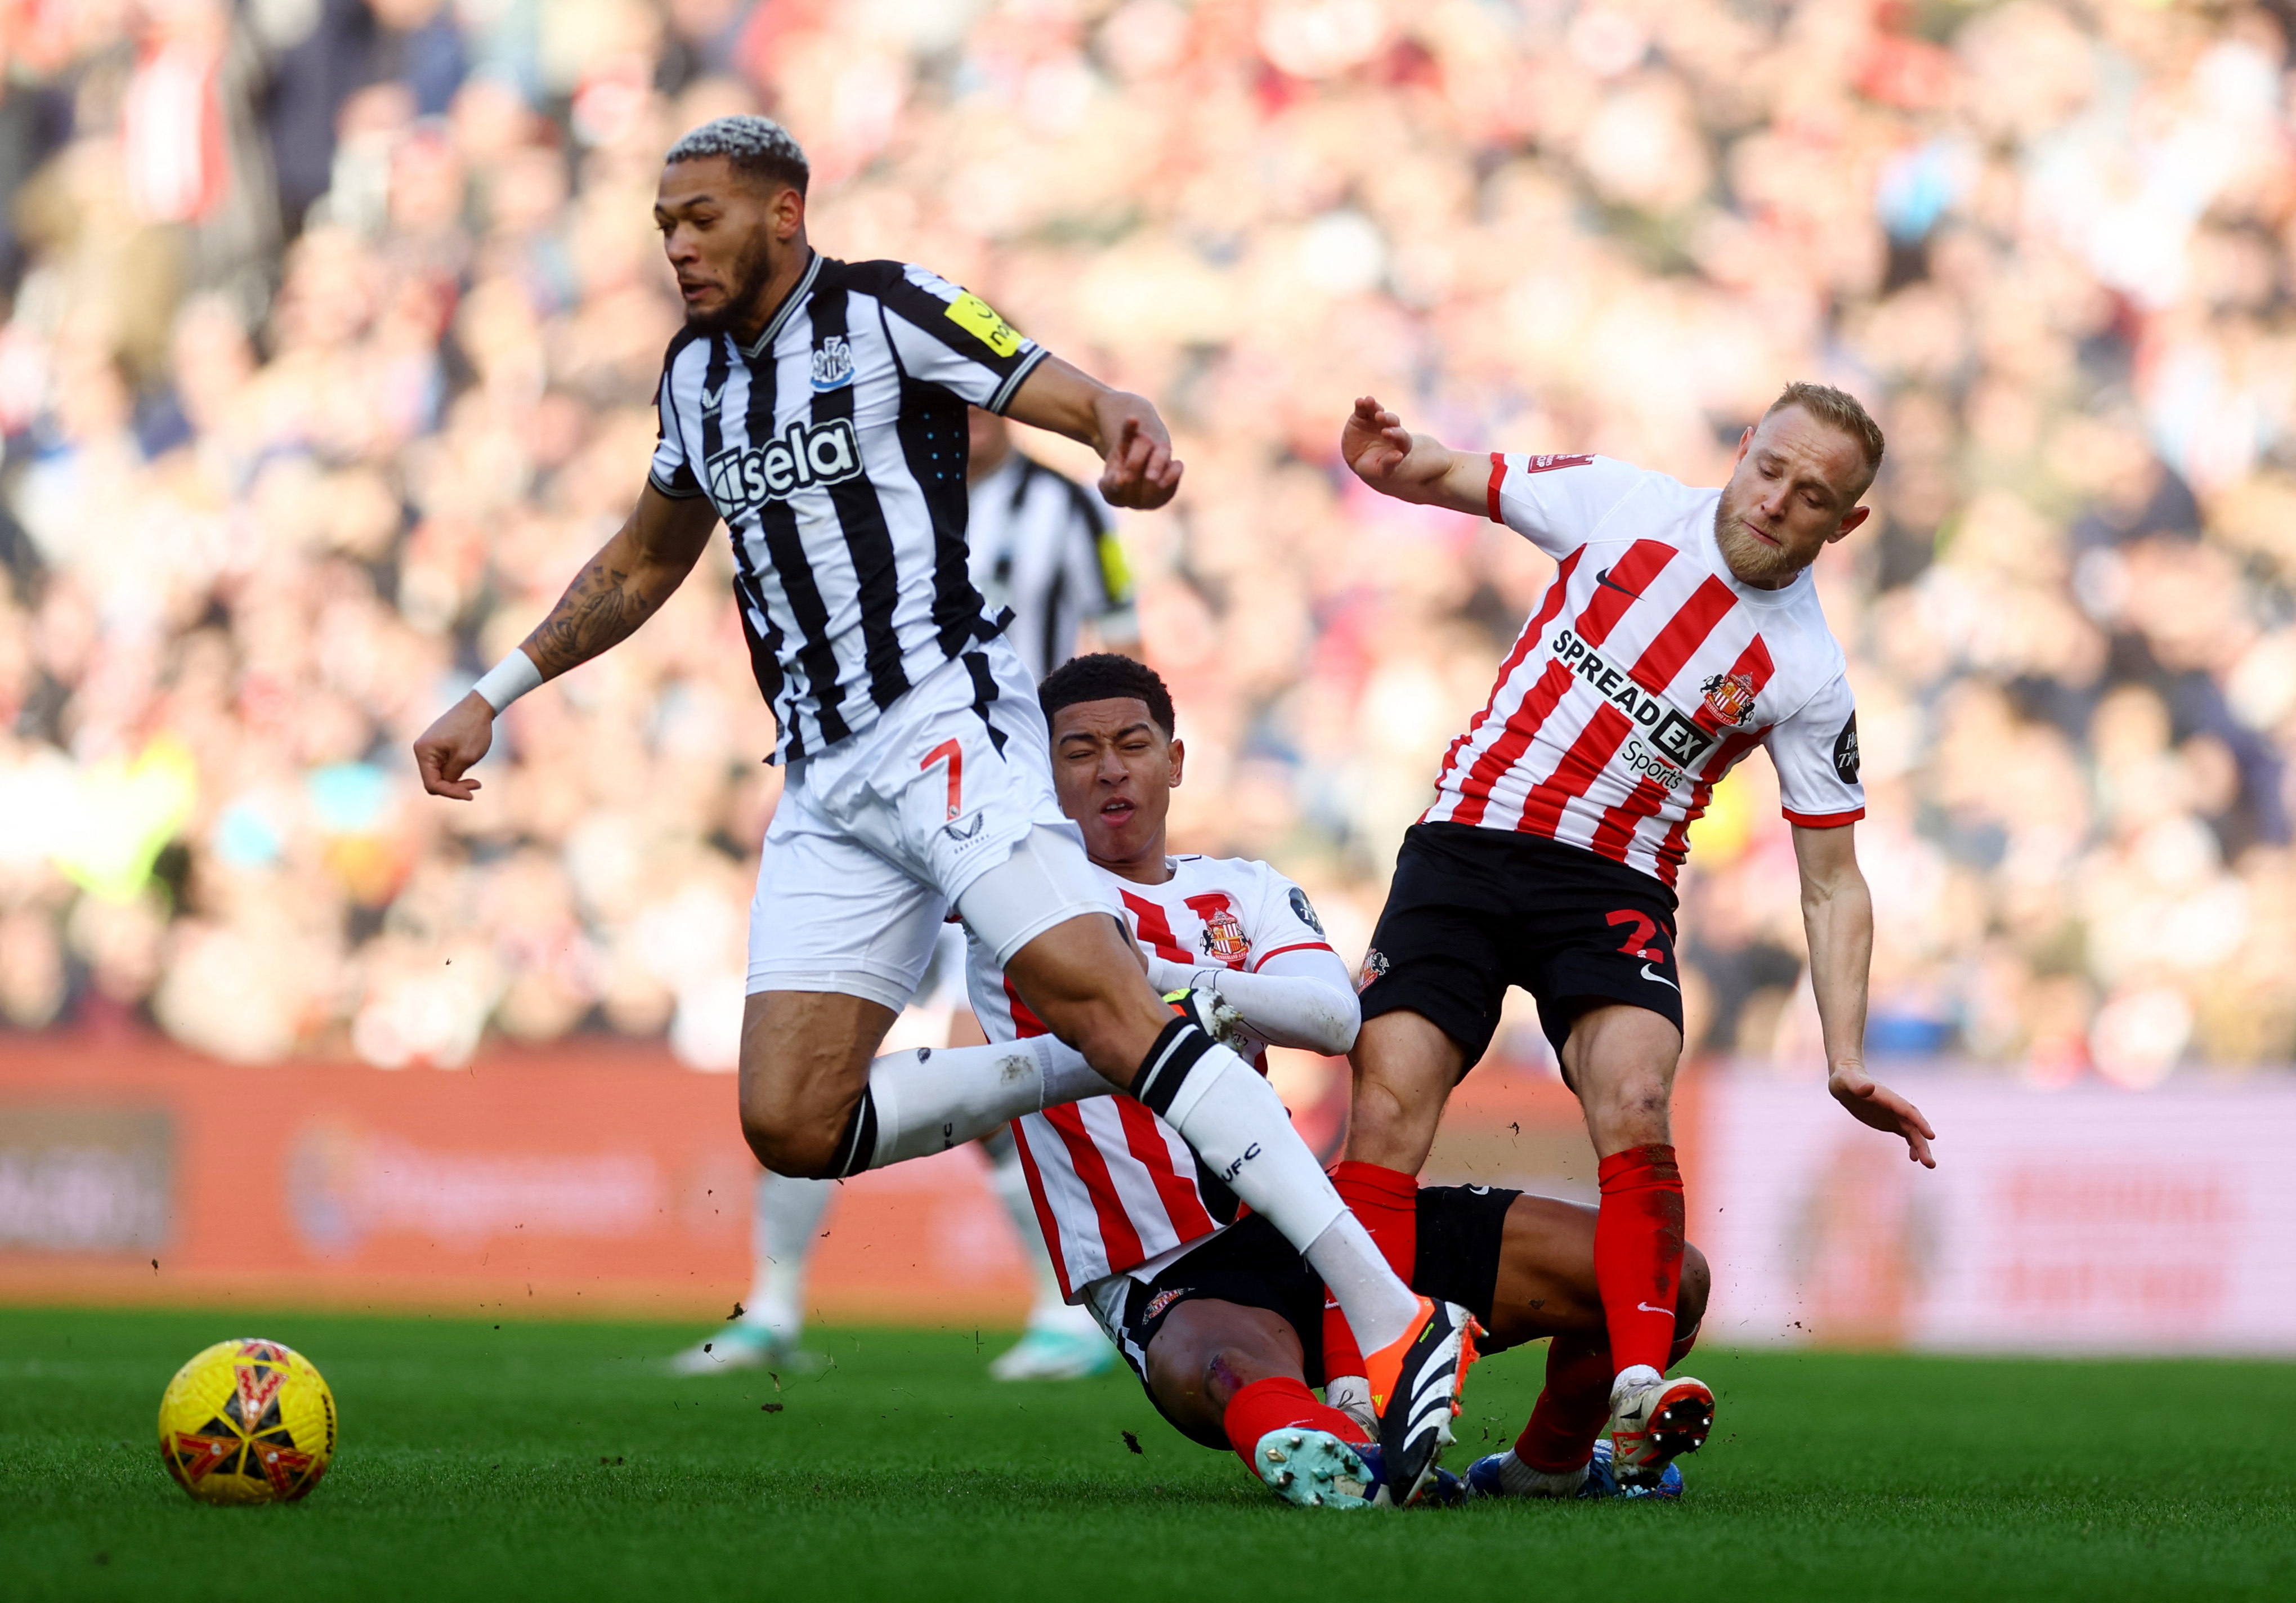 Fußballfans hatten Schwierigkeiten, Newcastle gegen Sunderland zu sehen, da es im FA Cup zu einem Trikotkonflikt kam